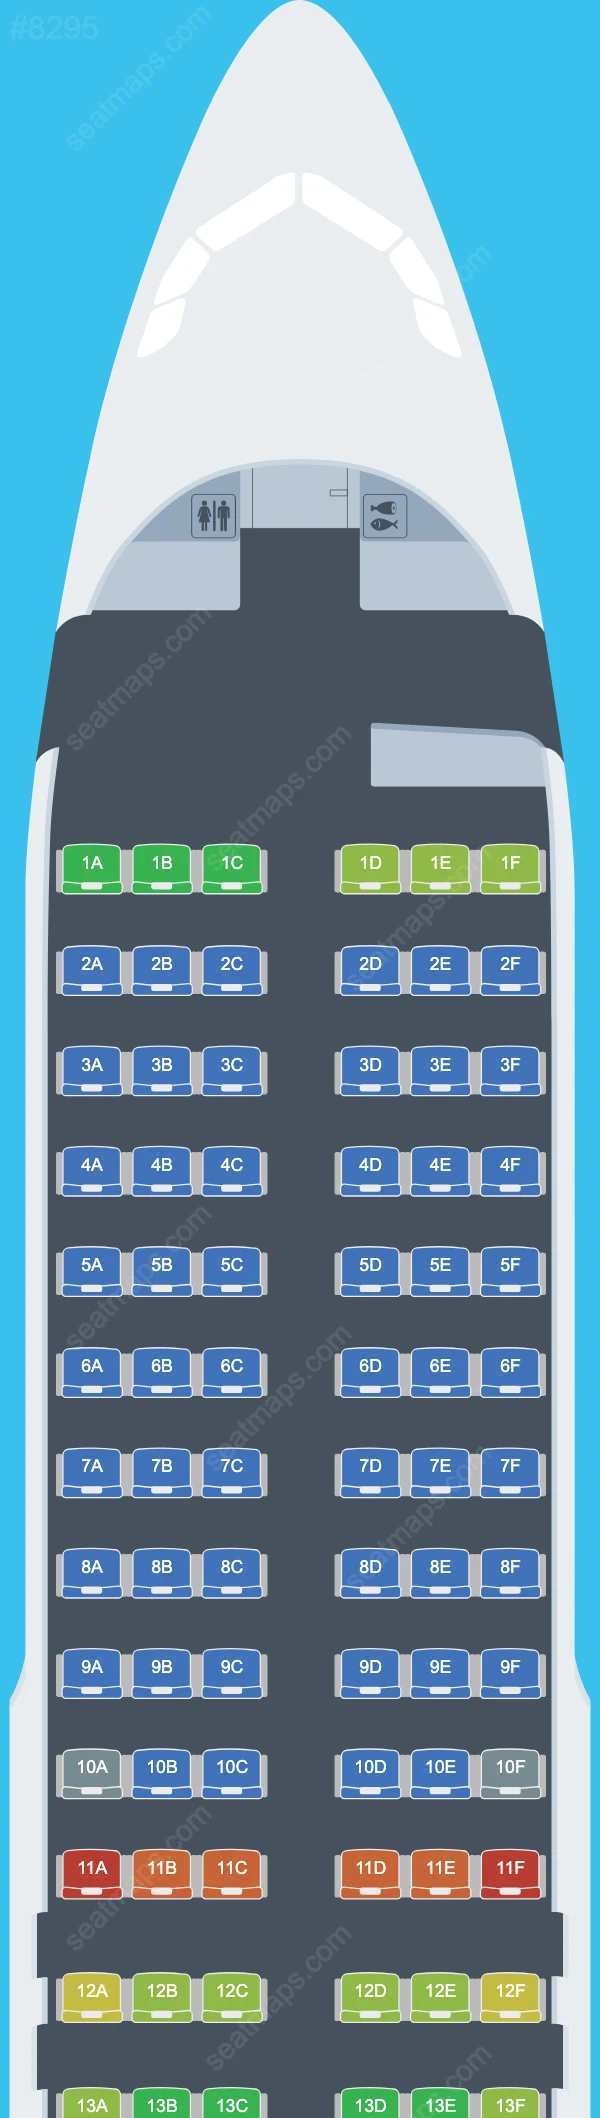 Viva Air Peru Airbus A320 Seat Maps A320-200